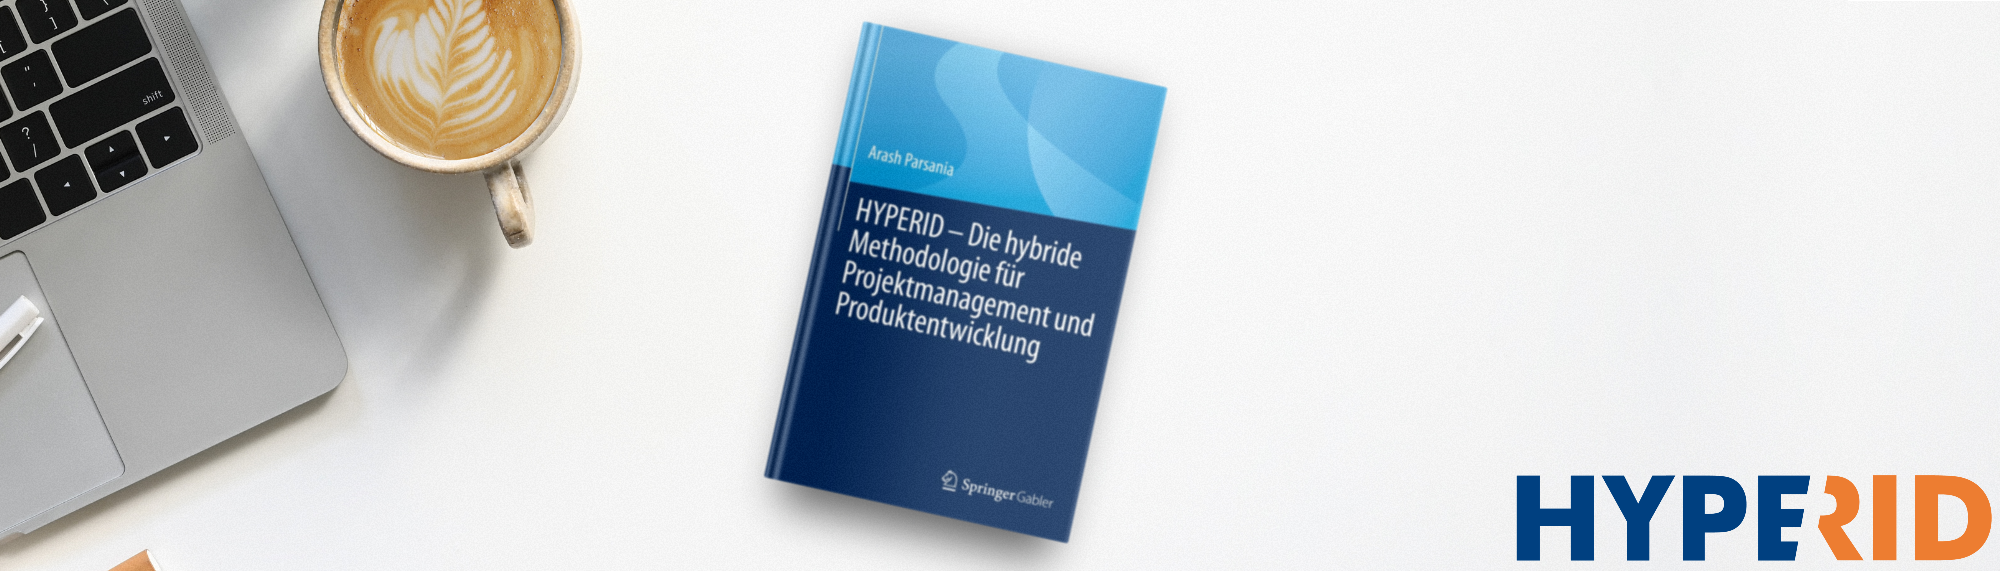 HYPERID: a new hybrid methodology | IAPM